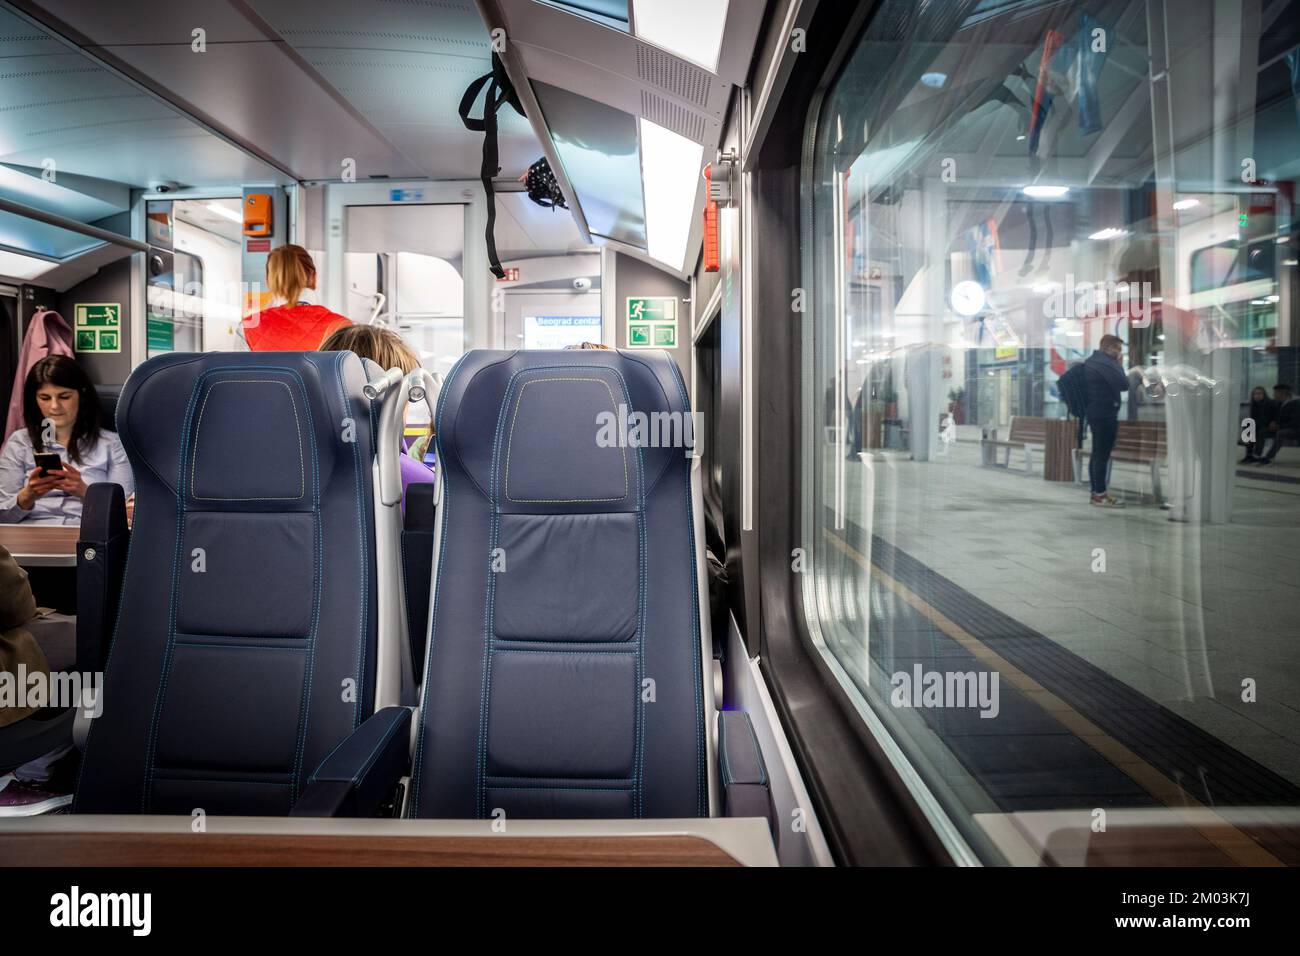 Imagen de un asiento típico de un tren europeo, vacío, en ruta en una estación de tren típica de Europa, en un moderno tren regional de la UEM. Foto de stock